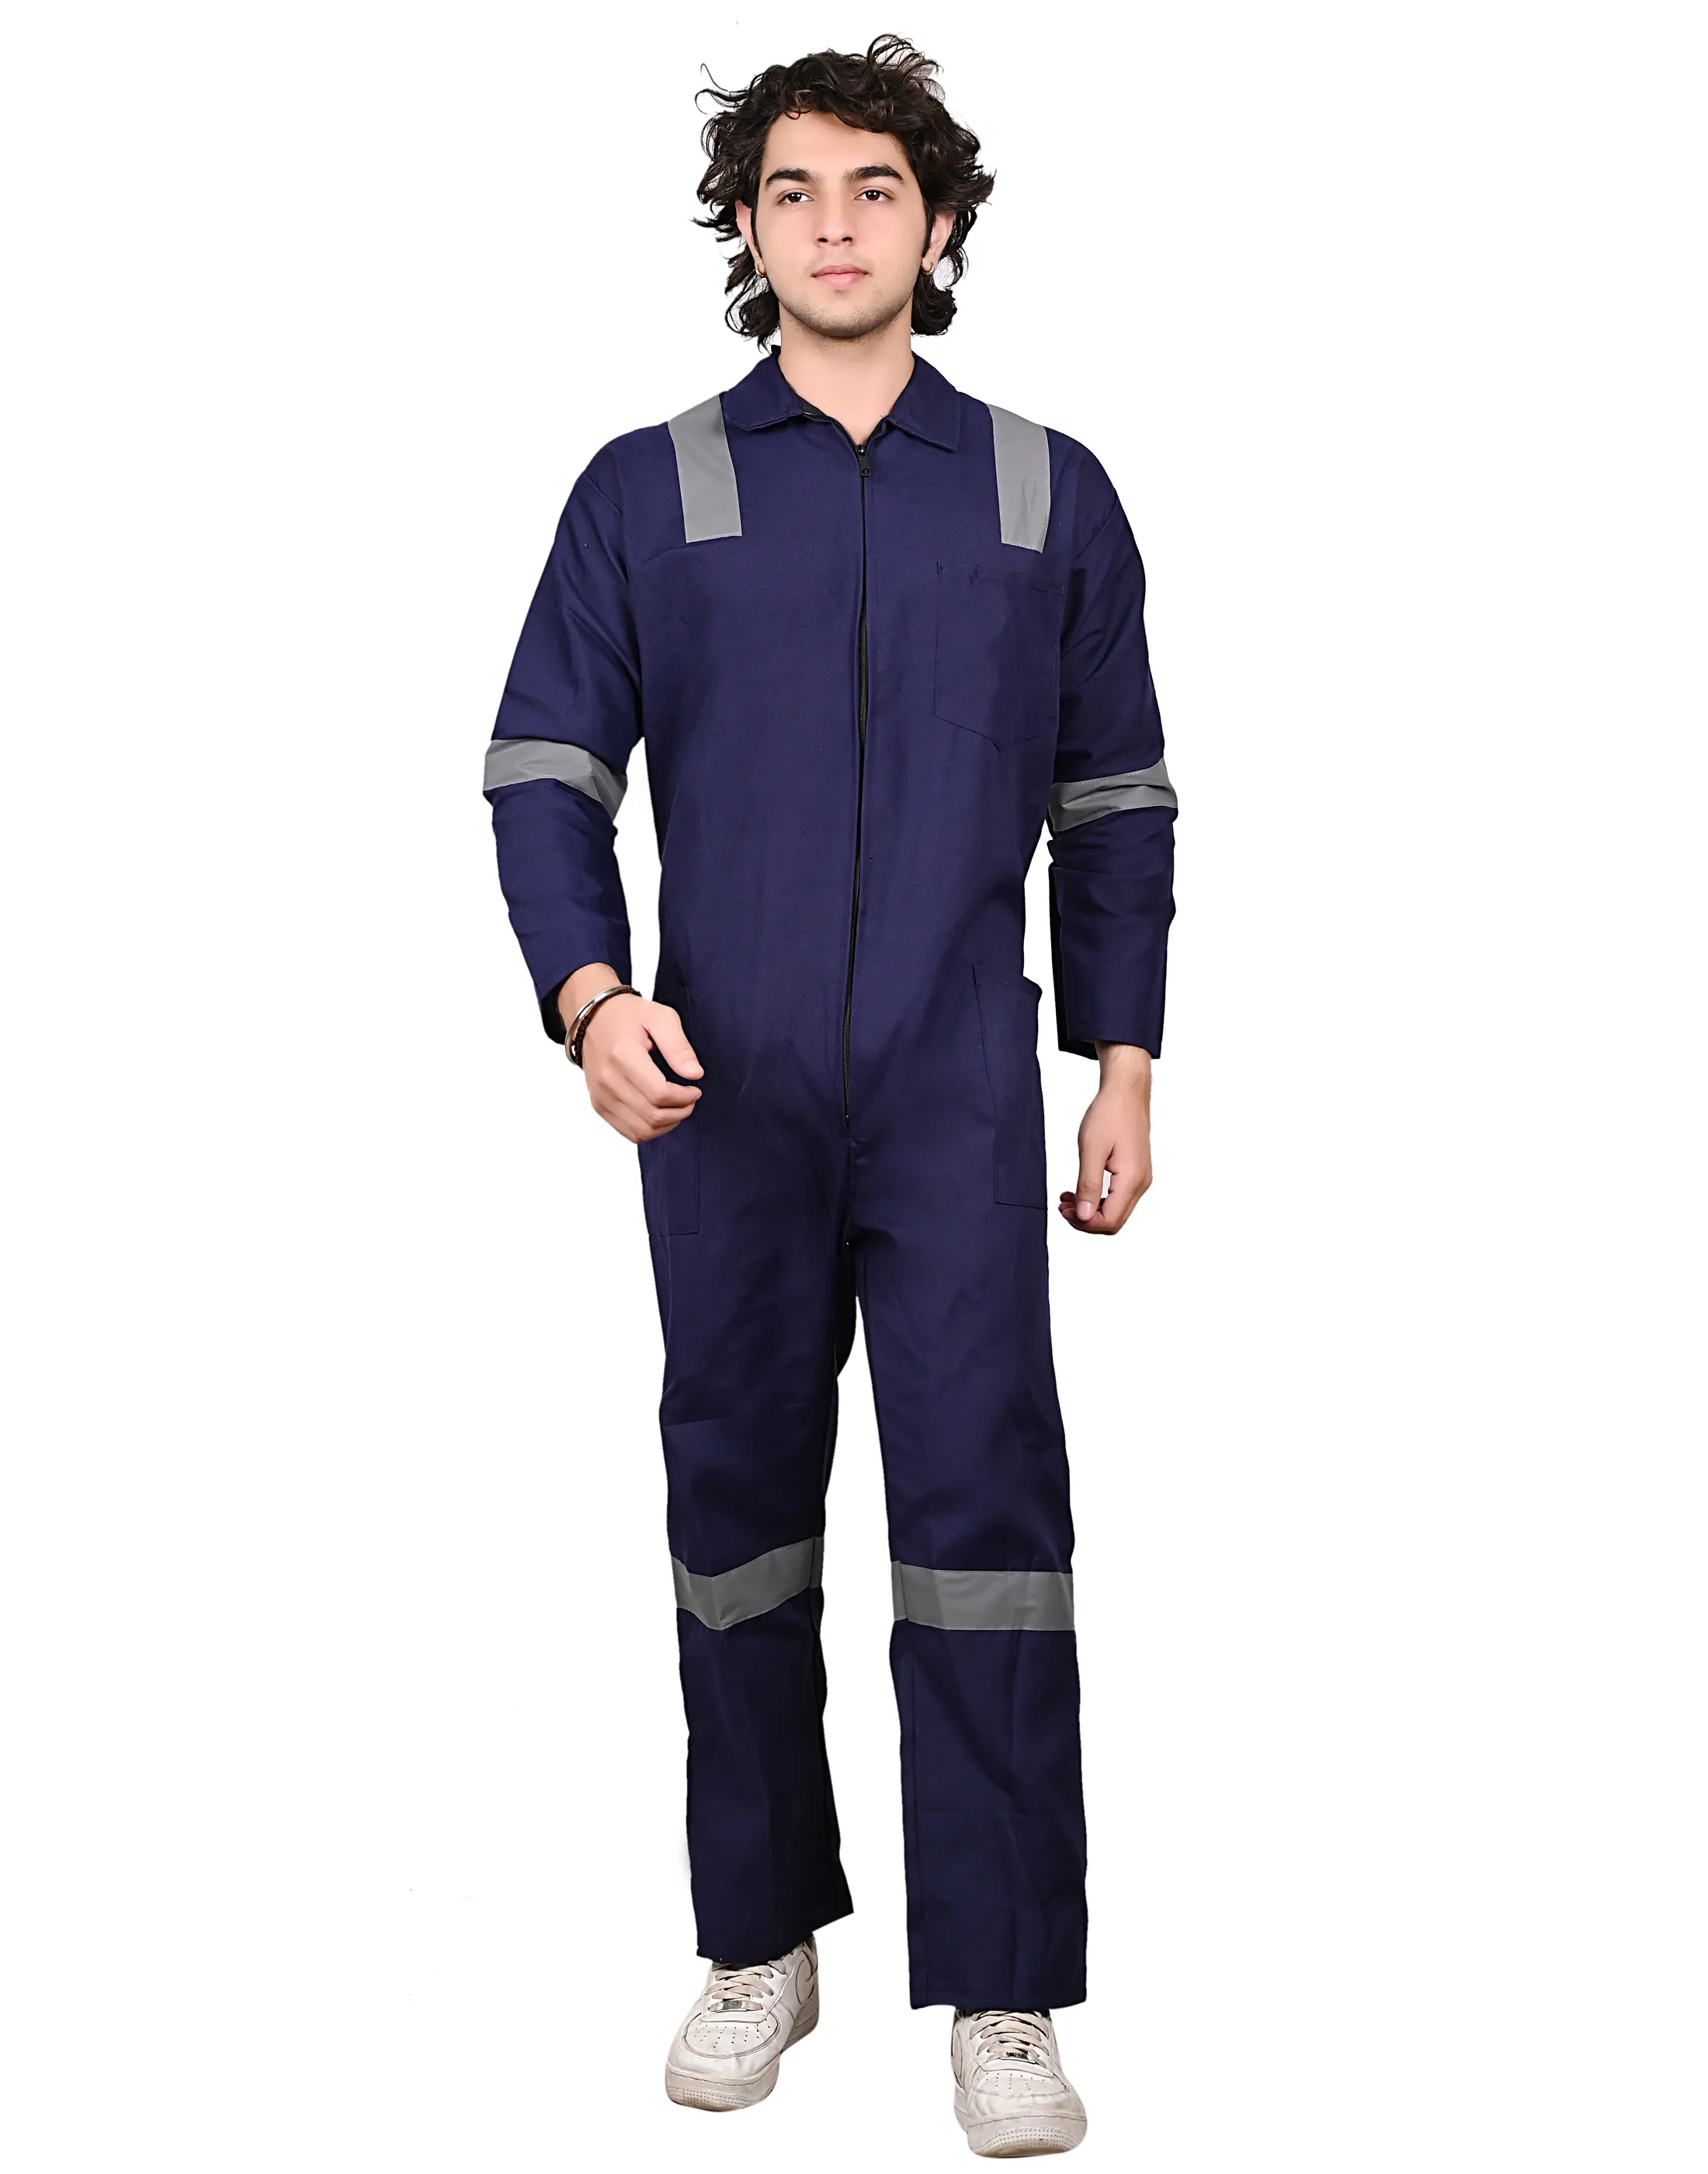 Hochwertiger Terrycott Polyester Überzug Kesselanzug Arbeitskleidung mit grausem Reflexionsband 150 GSM (Marineblau Farbe) zu niedrigem Preis